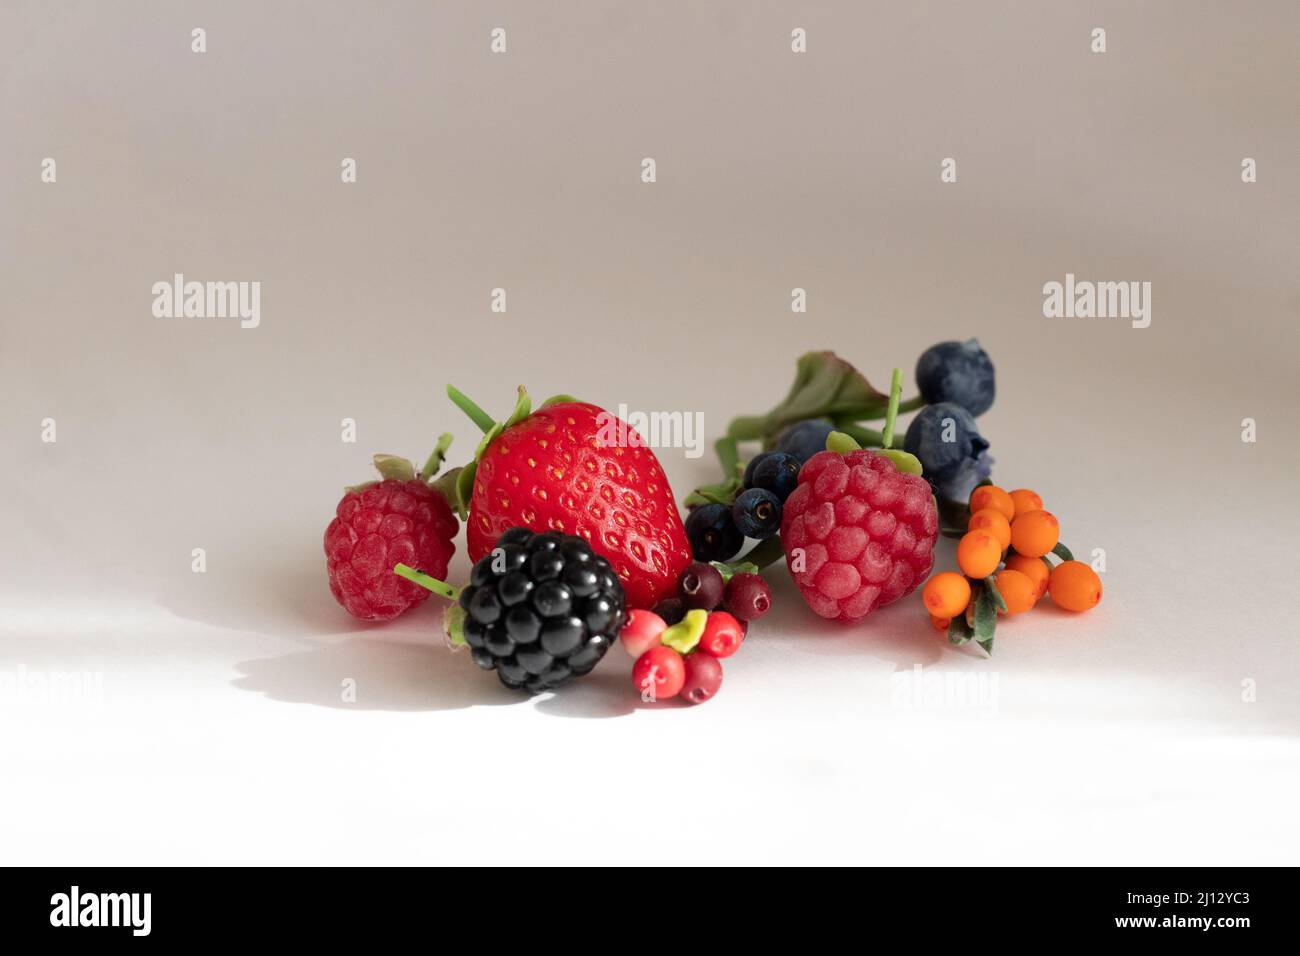 Miniature figures of strawberries, blackberries, raspberries, blueberries, blueberries, cranberries and cranberries Stock Photo